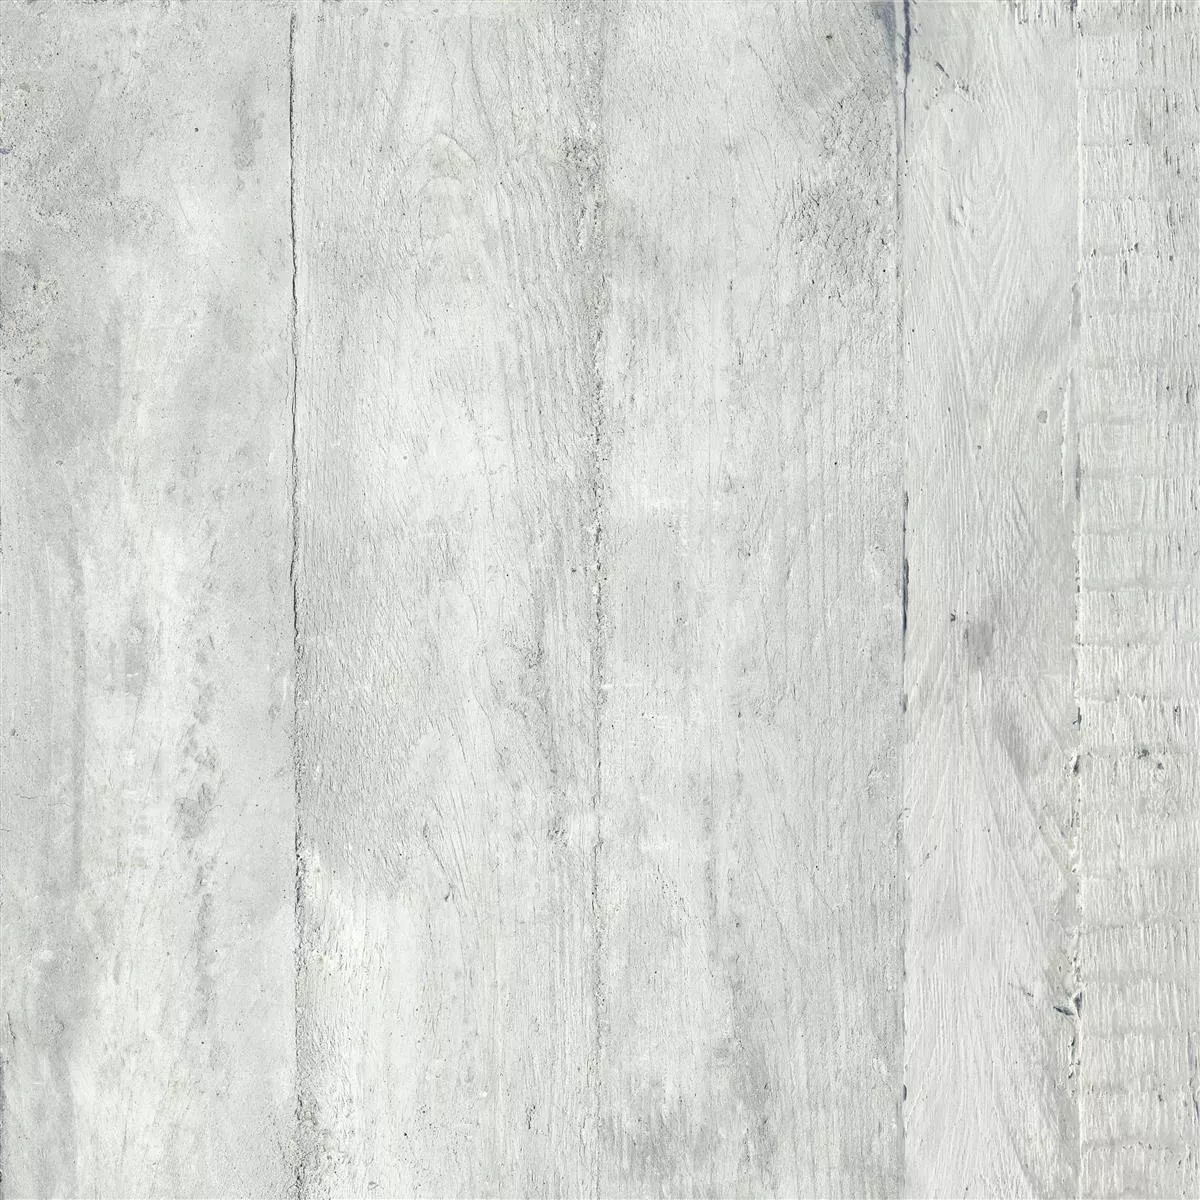 Πλακάκια Δαπέδου Gorki Όψη Ξύλου 60x60cm Γυαλισμένο Γκρί